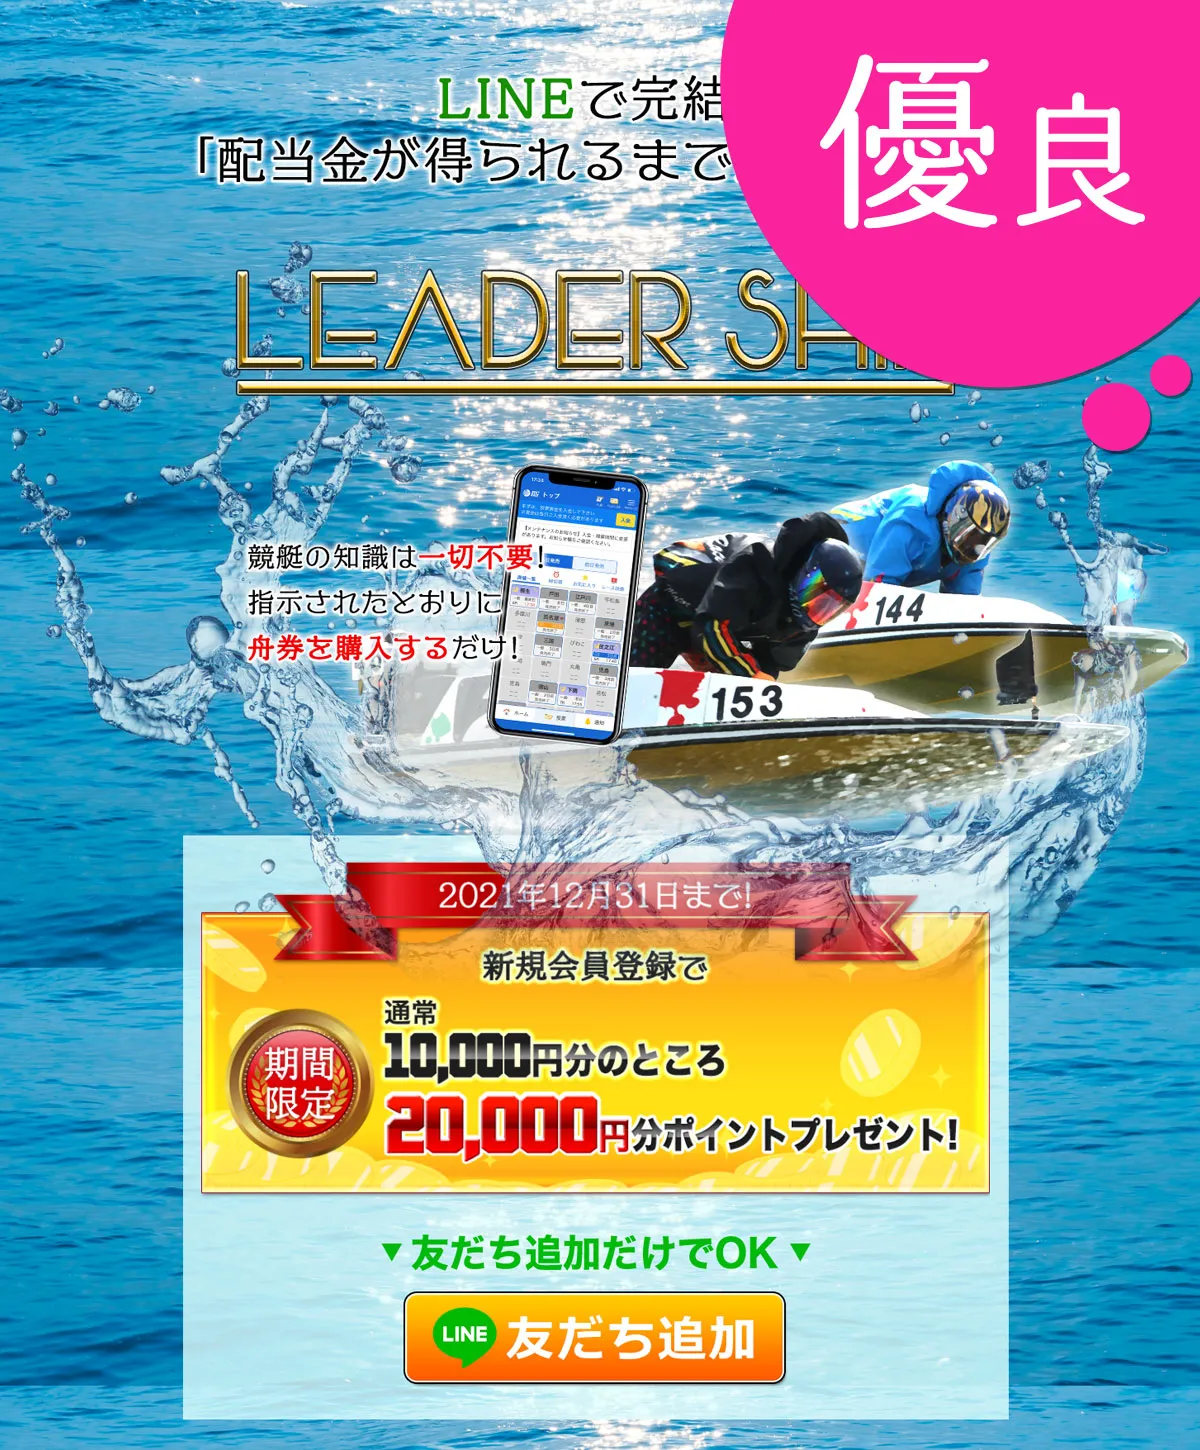 リーダーシップ(LEADER SHIP) 優良競艇予想サイトの口コミ検証や無料情報の予想結果も公開中